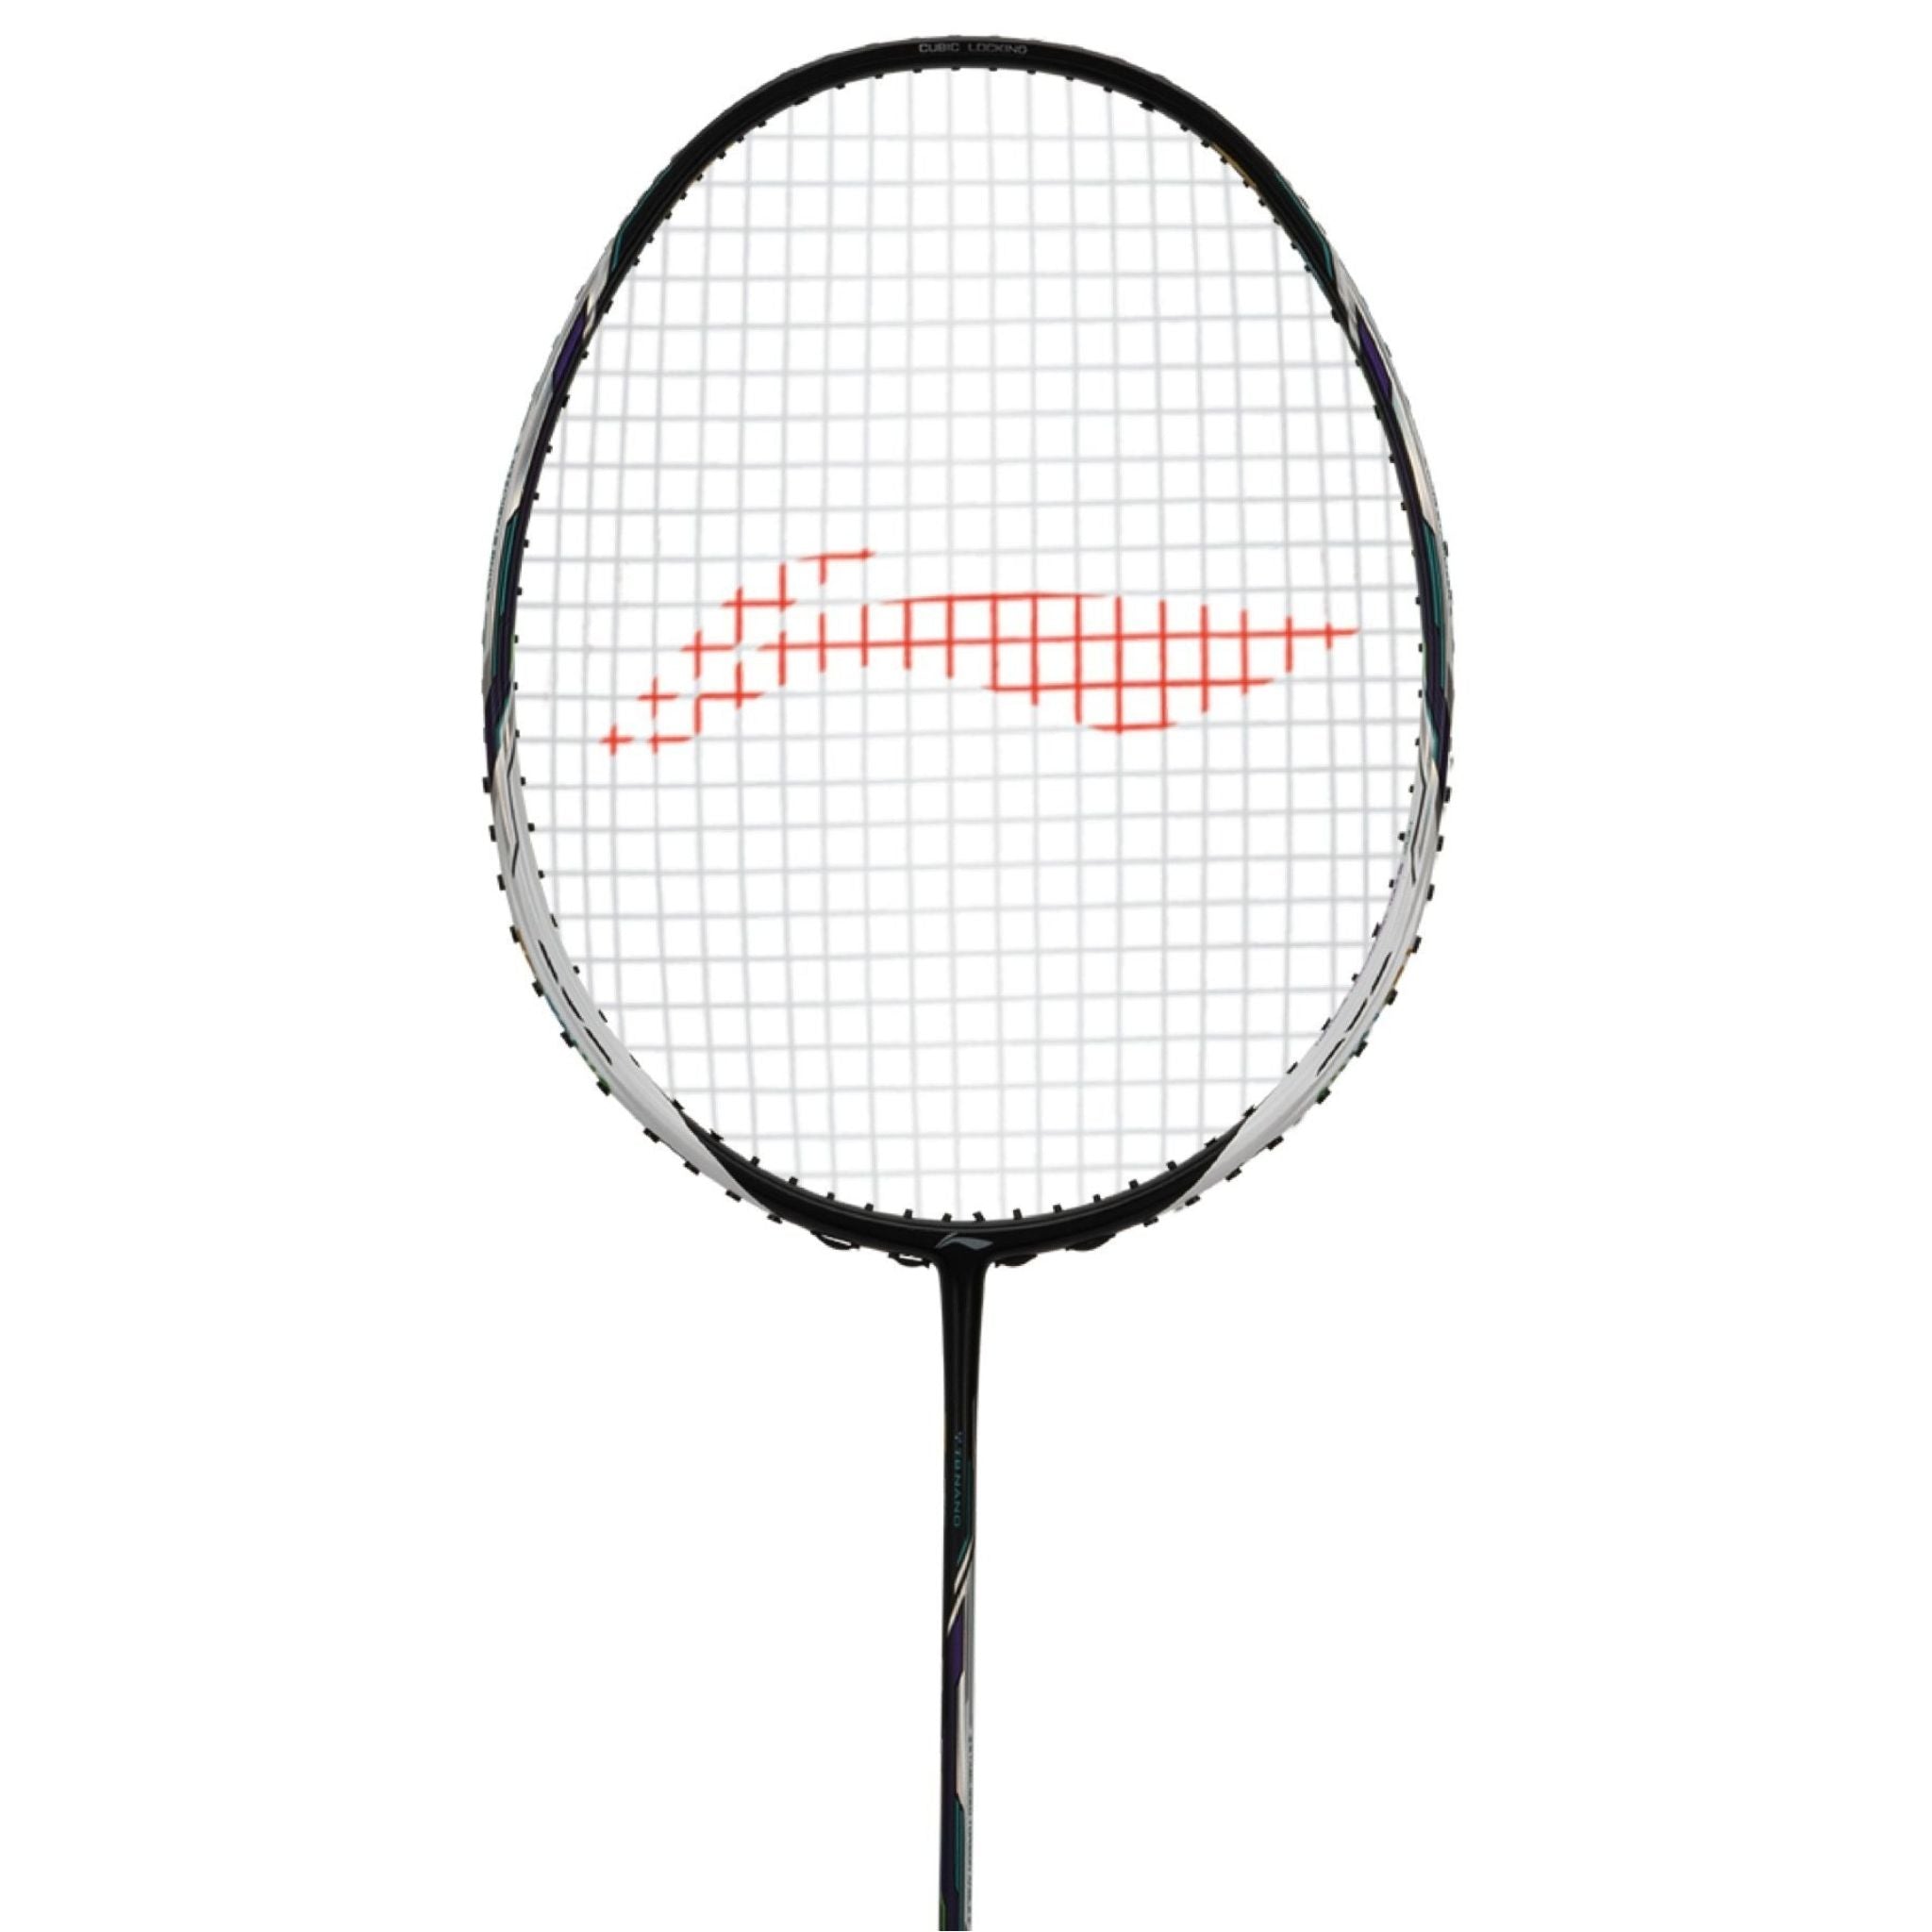 LI-NING TECTONIC 9 5U Badminton Racket